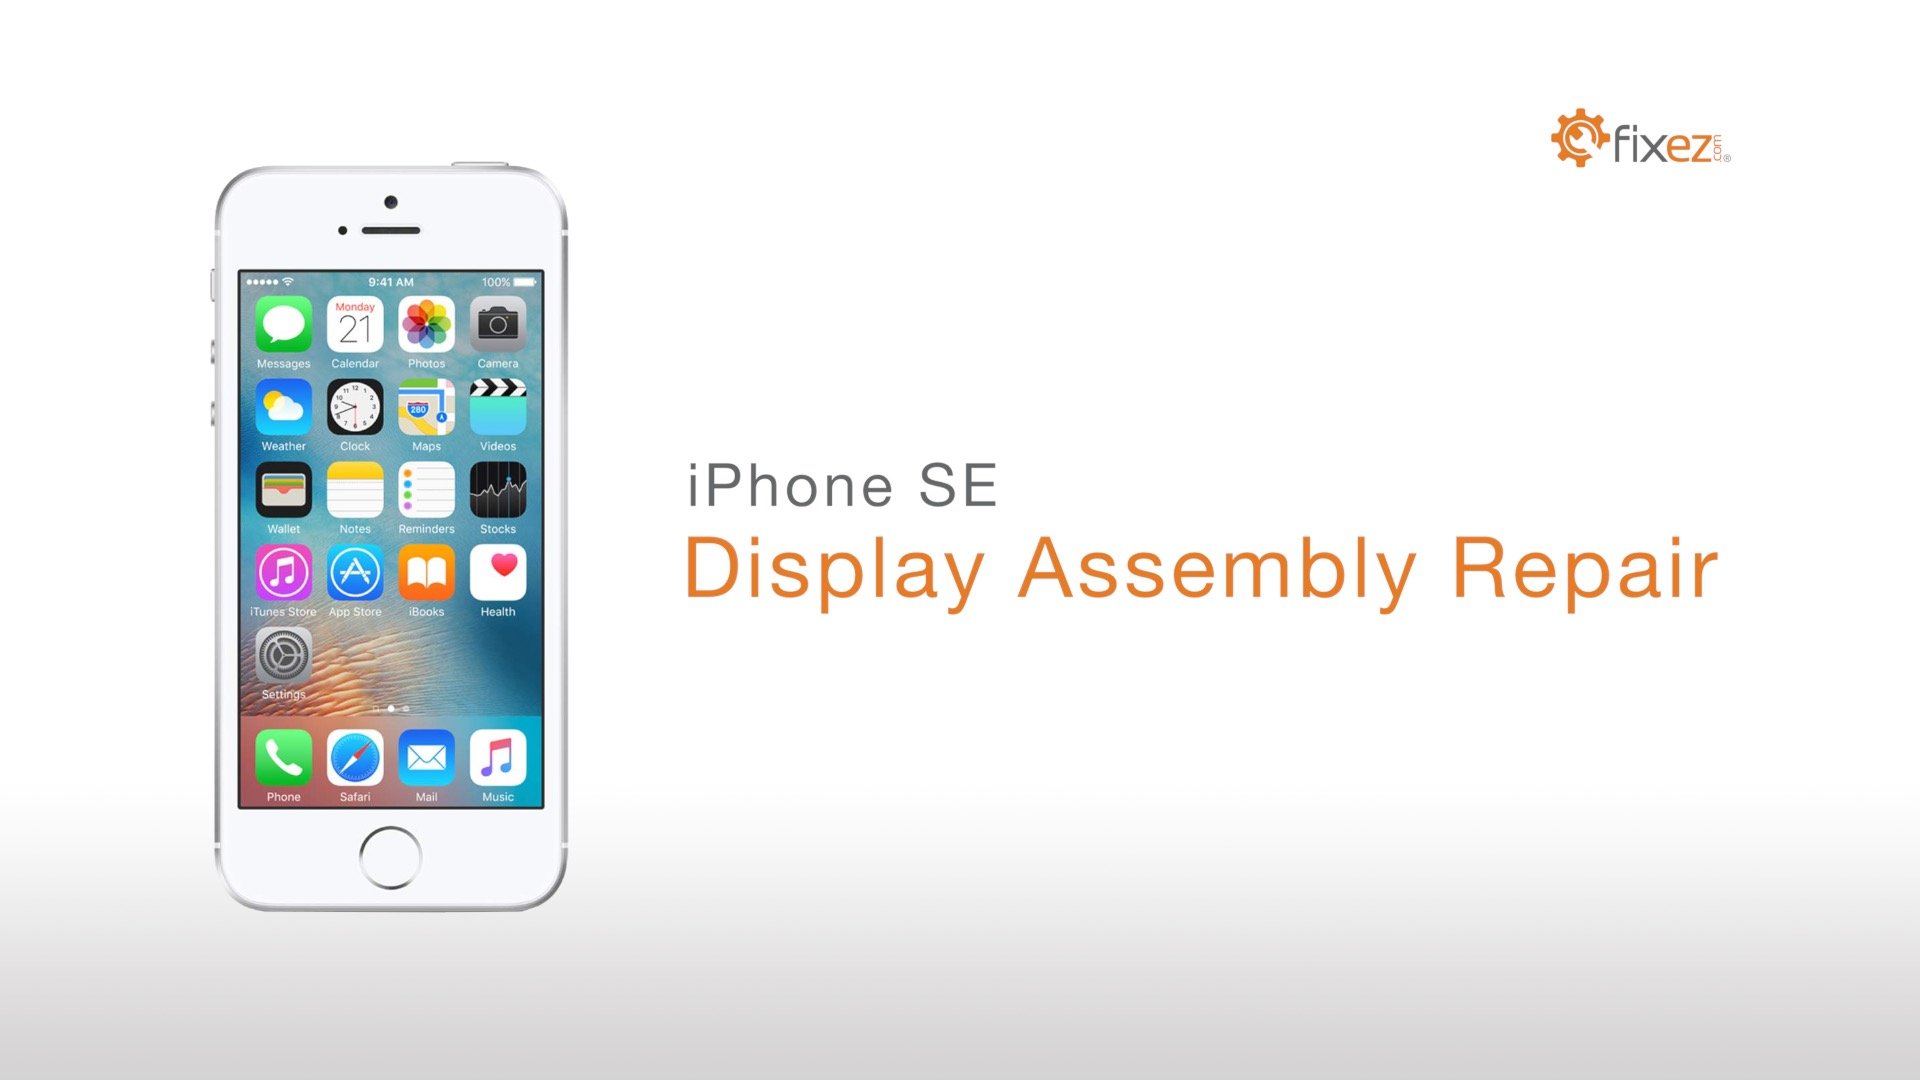 iPhone SE Display Assembly Repair